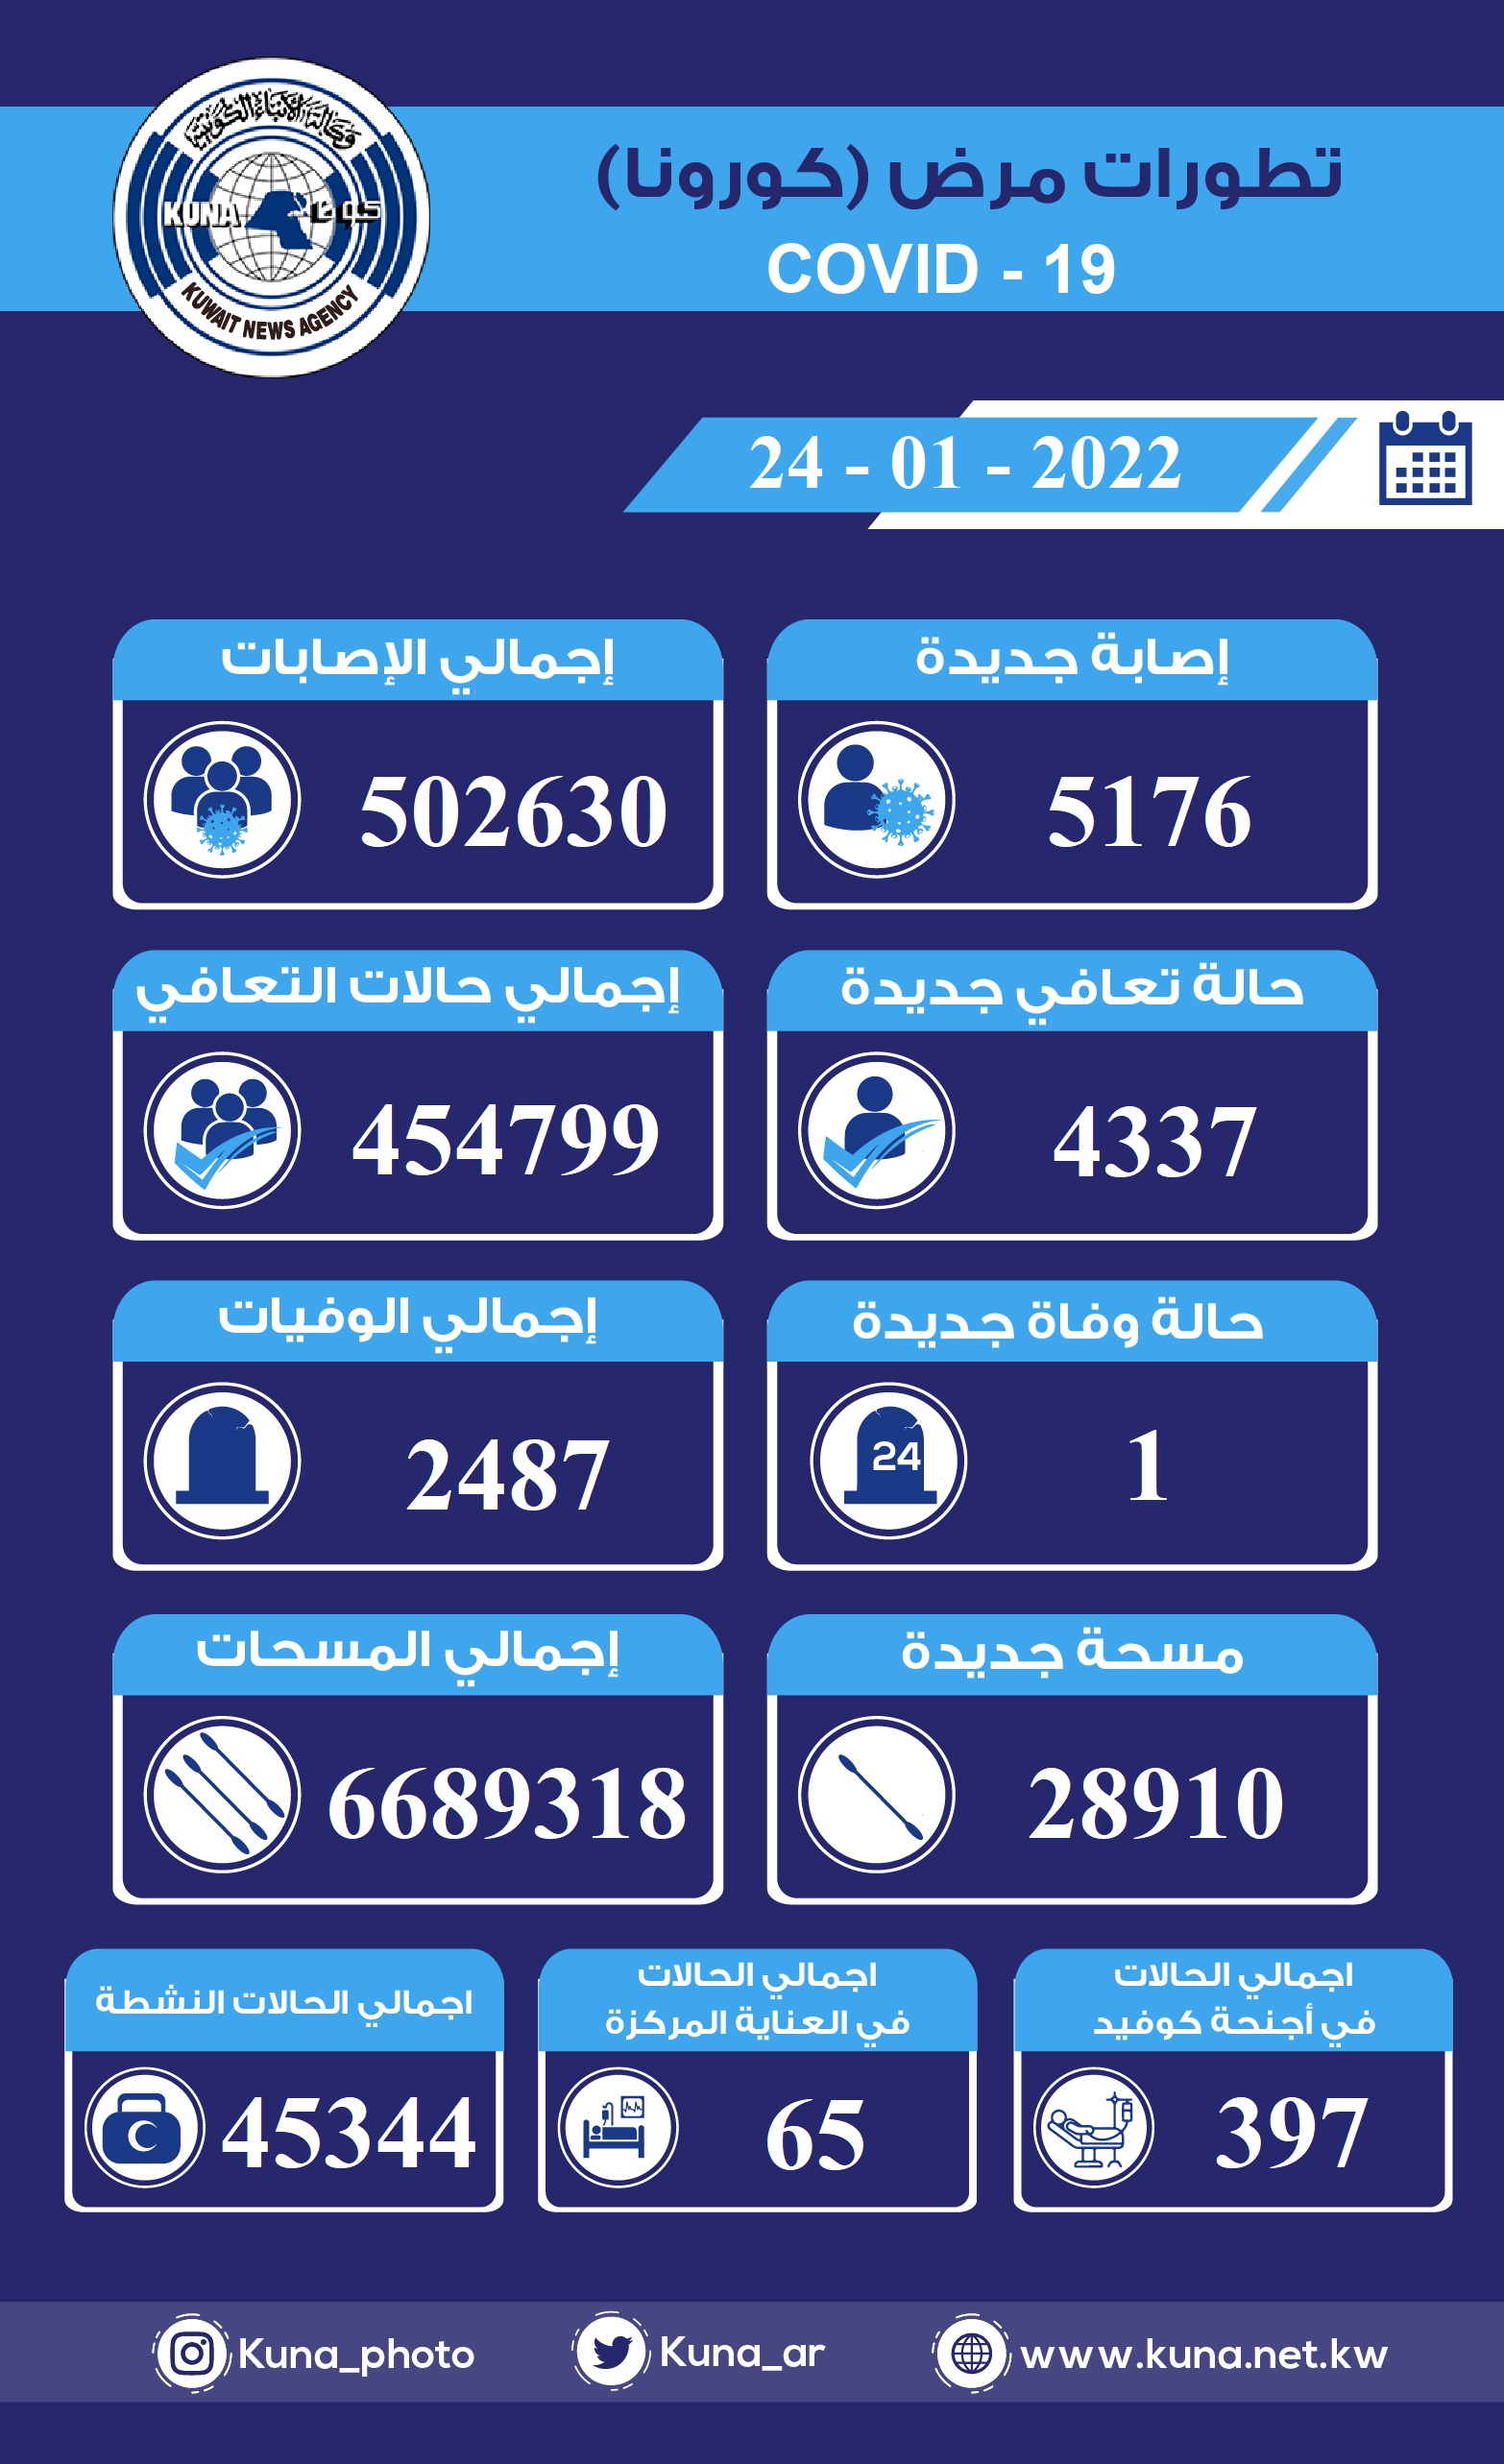 (الصحة) الكويتية: 5176 إصابة جديدة ب(كورونا) وشفاء 4337 وتسجيل حالة وفاة خلال الساعات ال24 الماضية                                                                                                                                                        